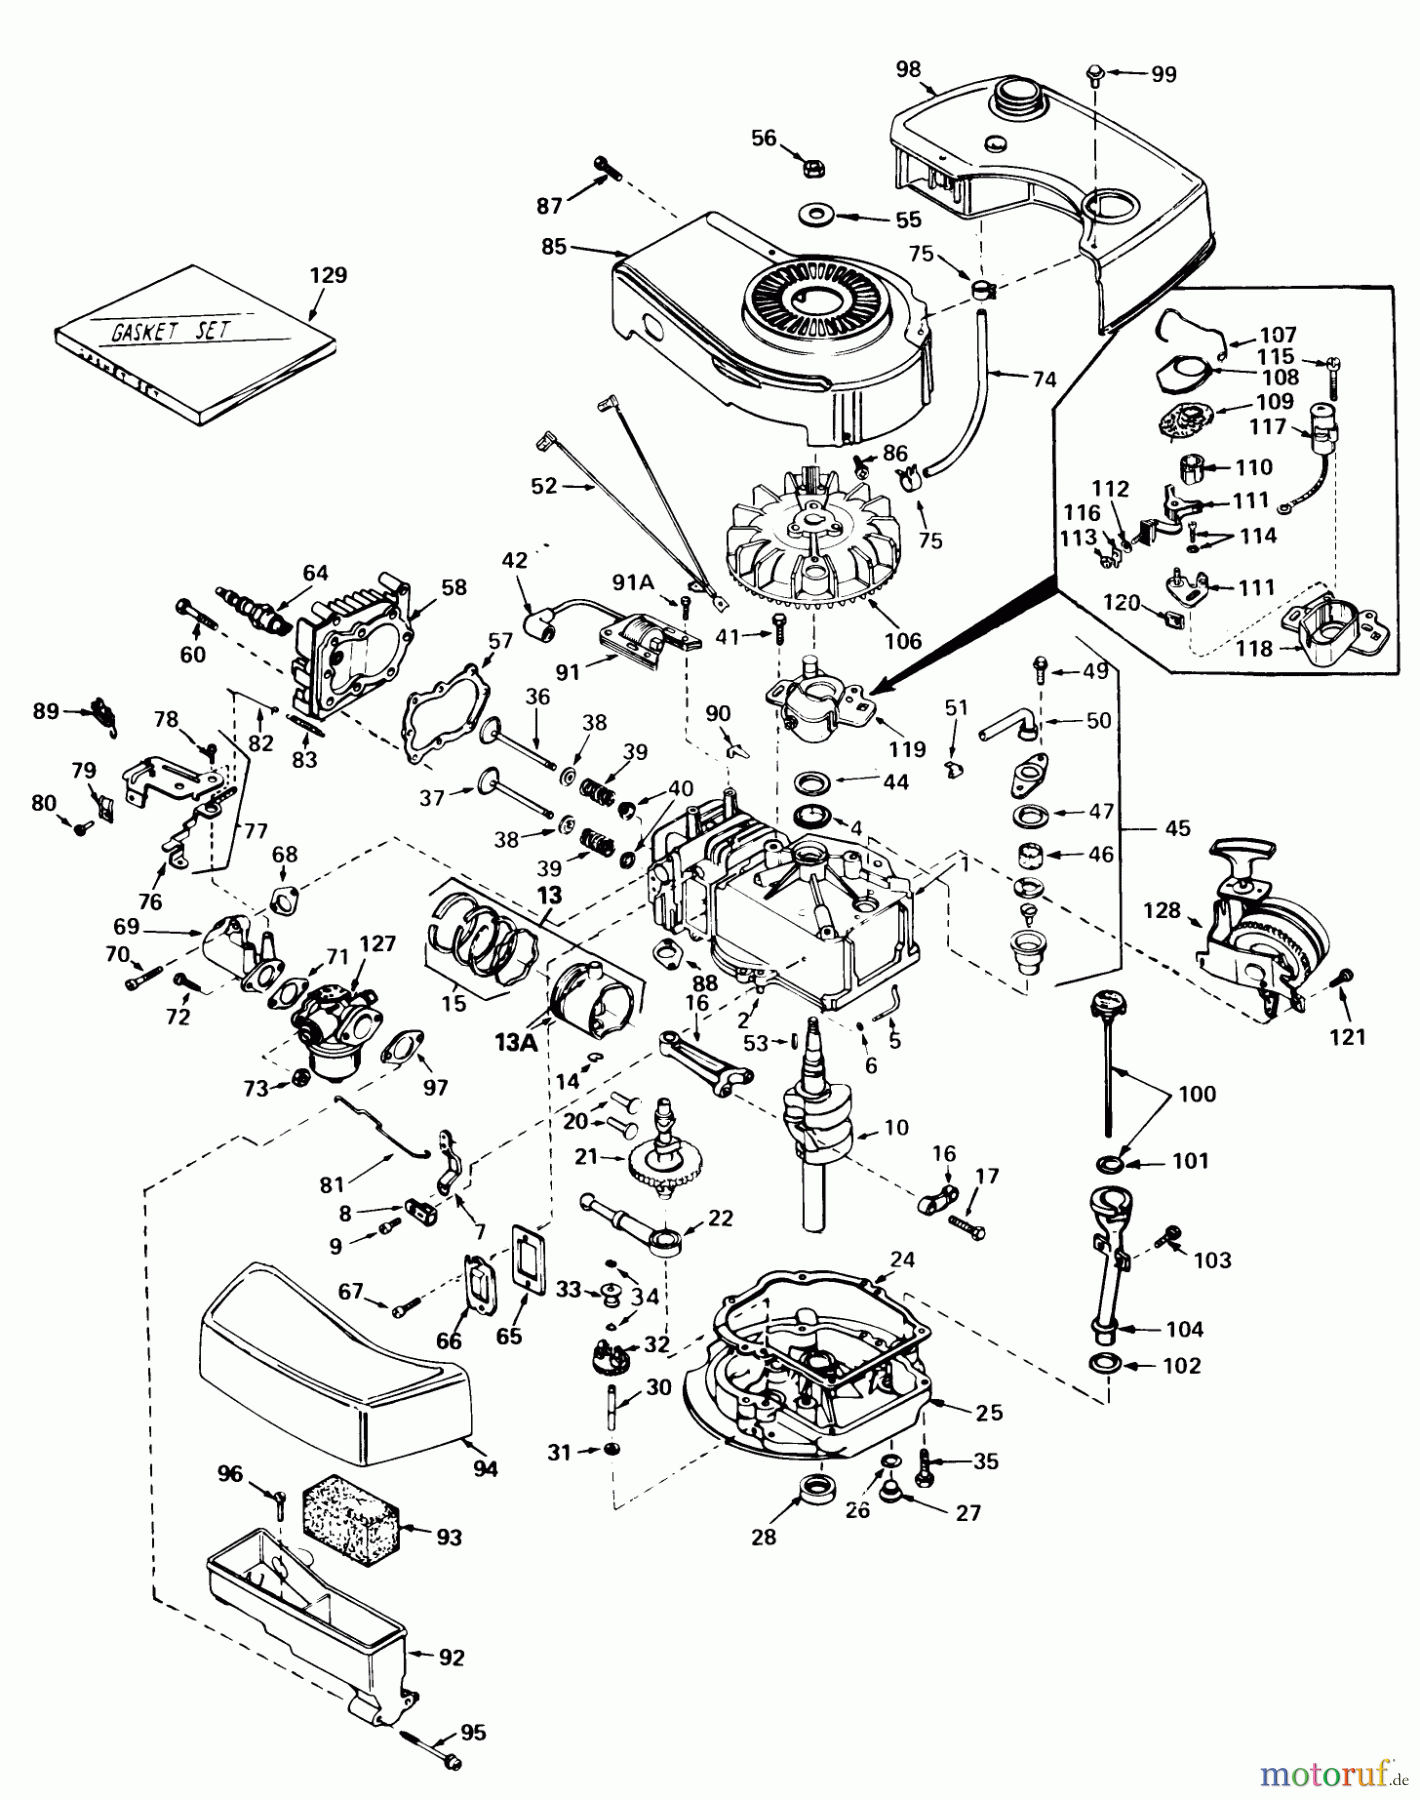  Toro Neu Mowers, Walk-Behind Seite 1 20752 - Toro Lawnmower, 1980 (0000001-0999999) ENGINE TECUMSEH MODEL NO. TNT 100-10068C